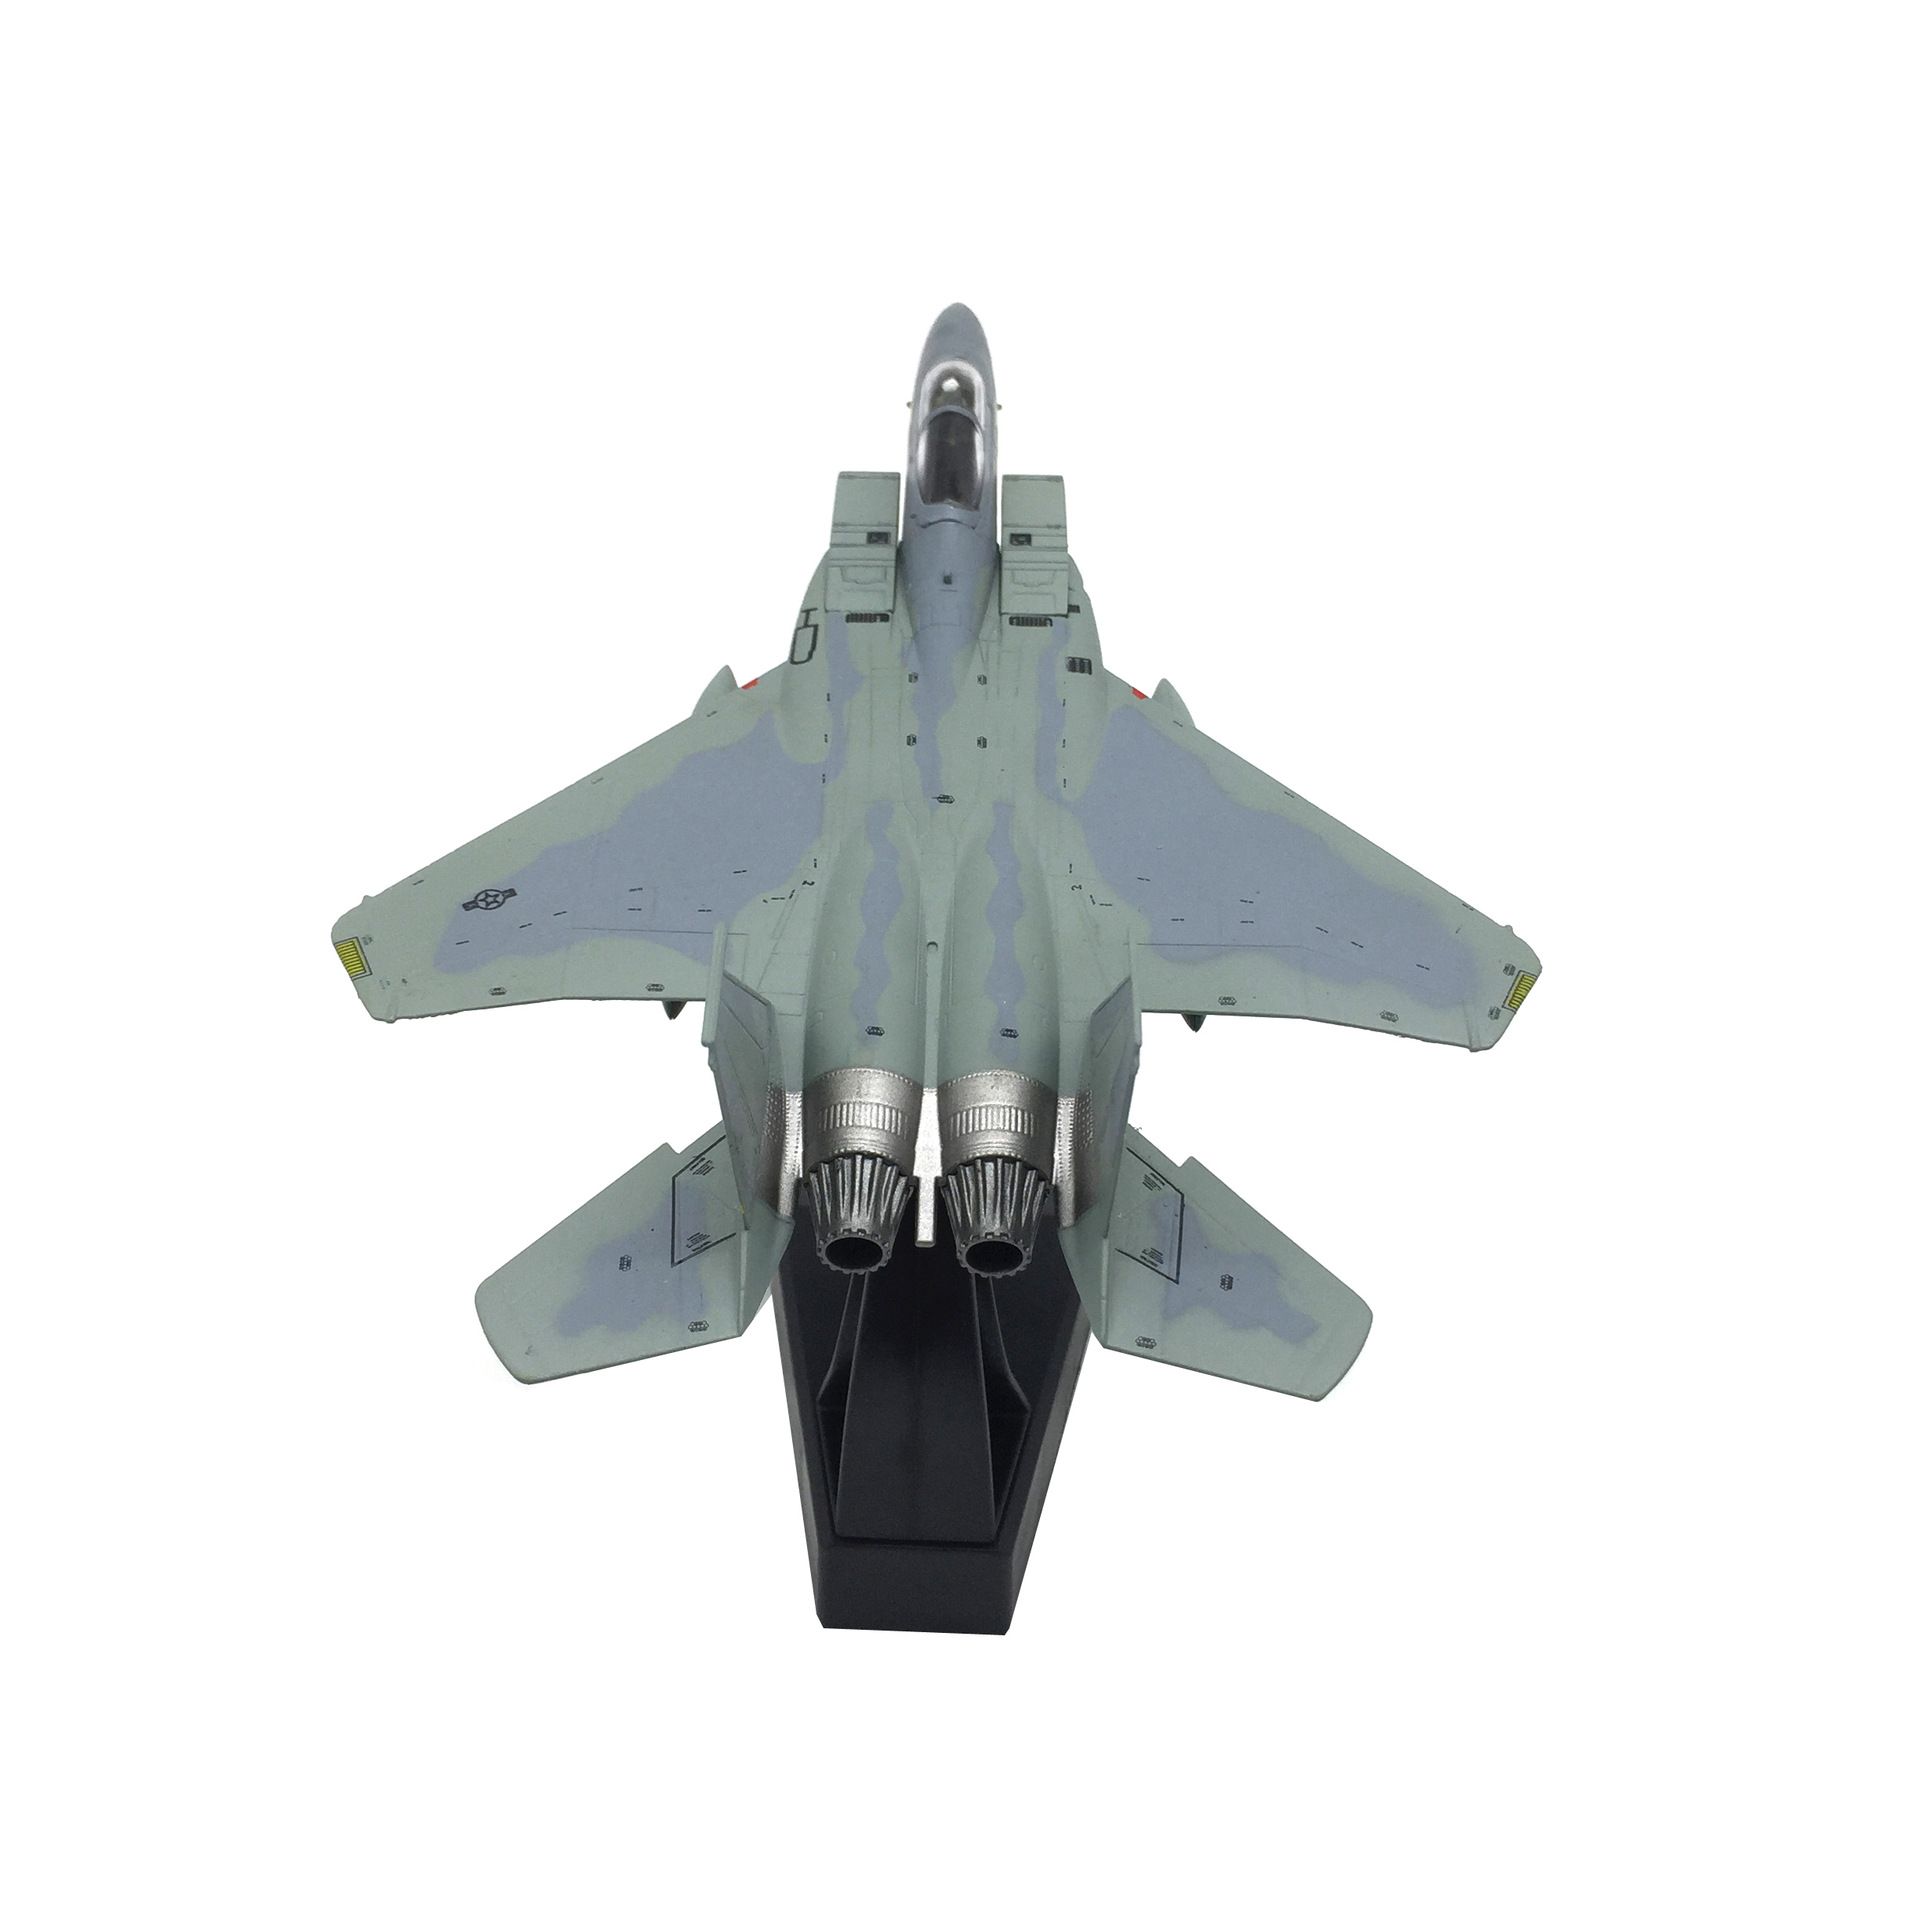  Mô hình máy bay chiến đấu American USA F-15C Eagle tỉ lệ 1:100 Ns models MBQS042 